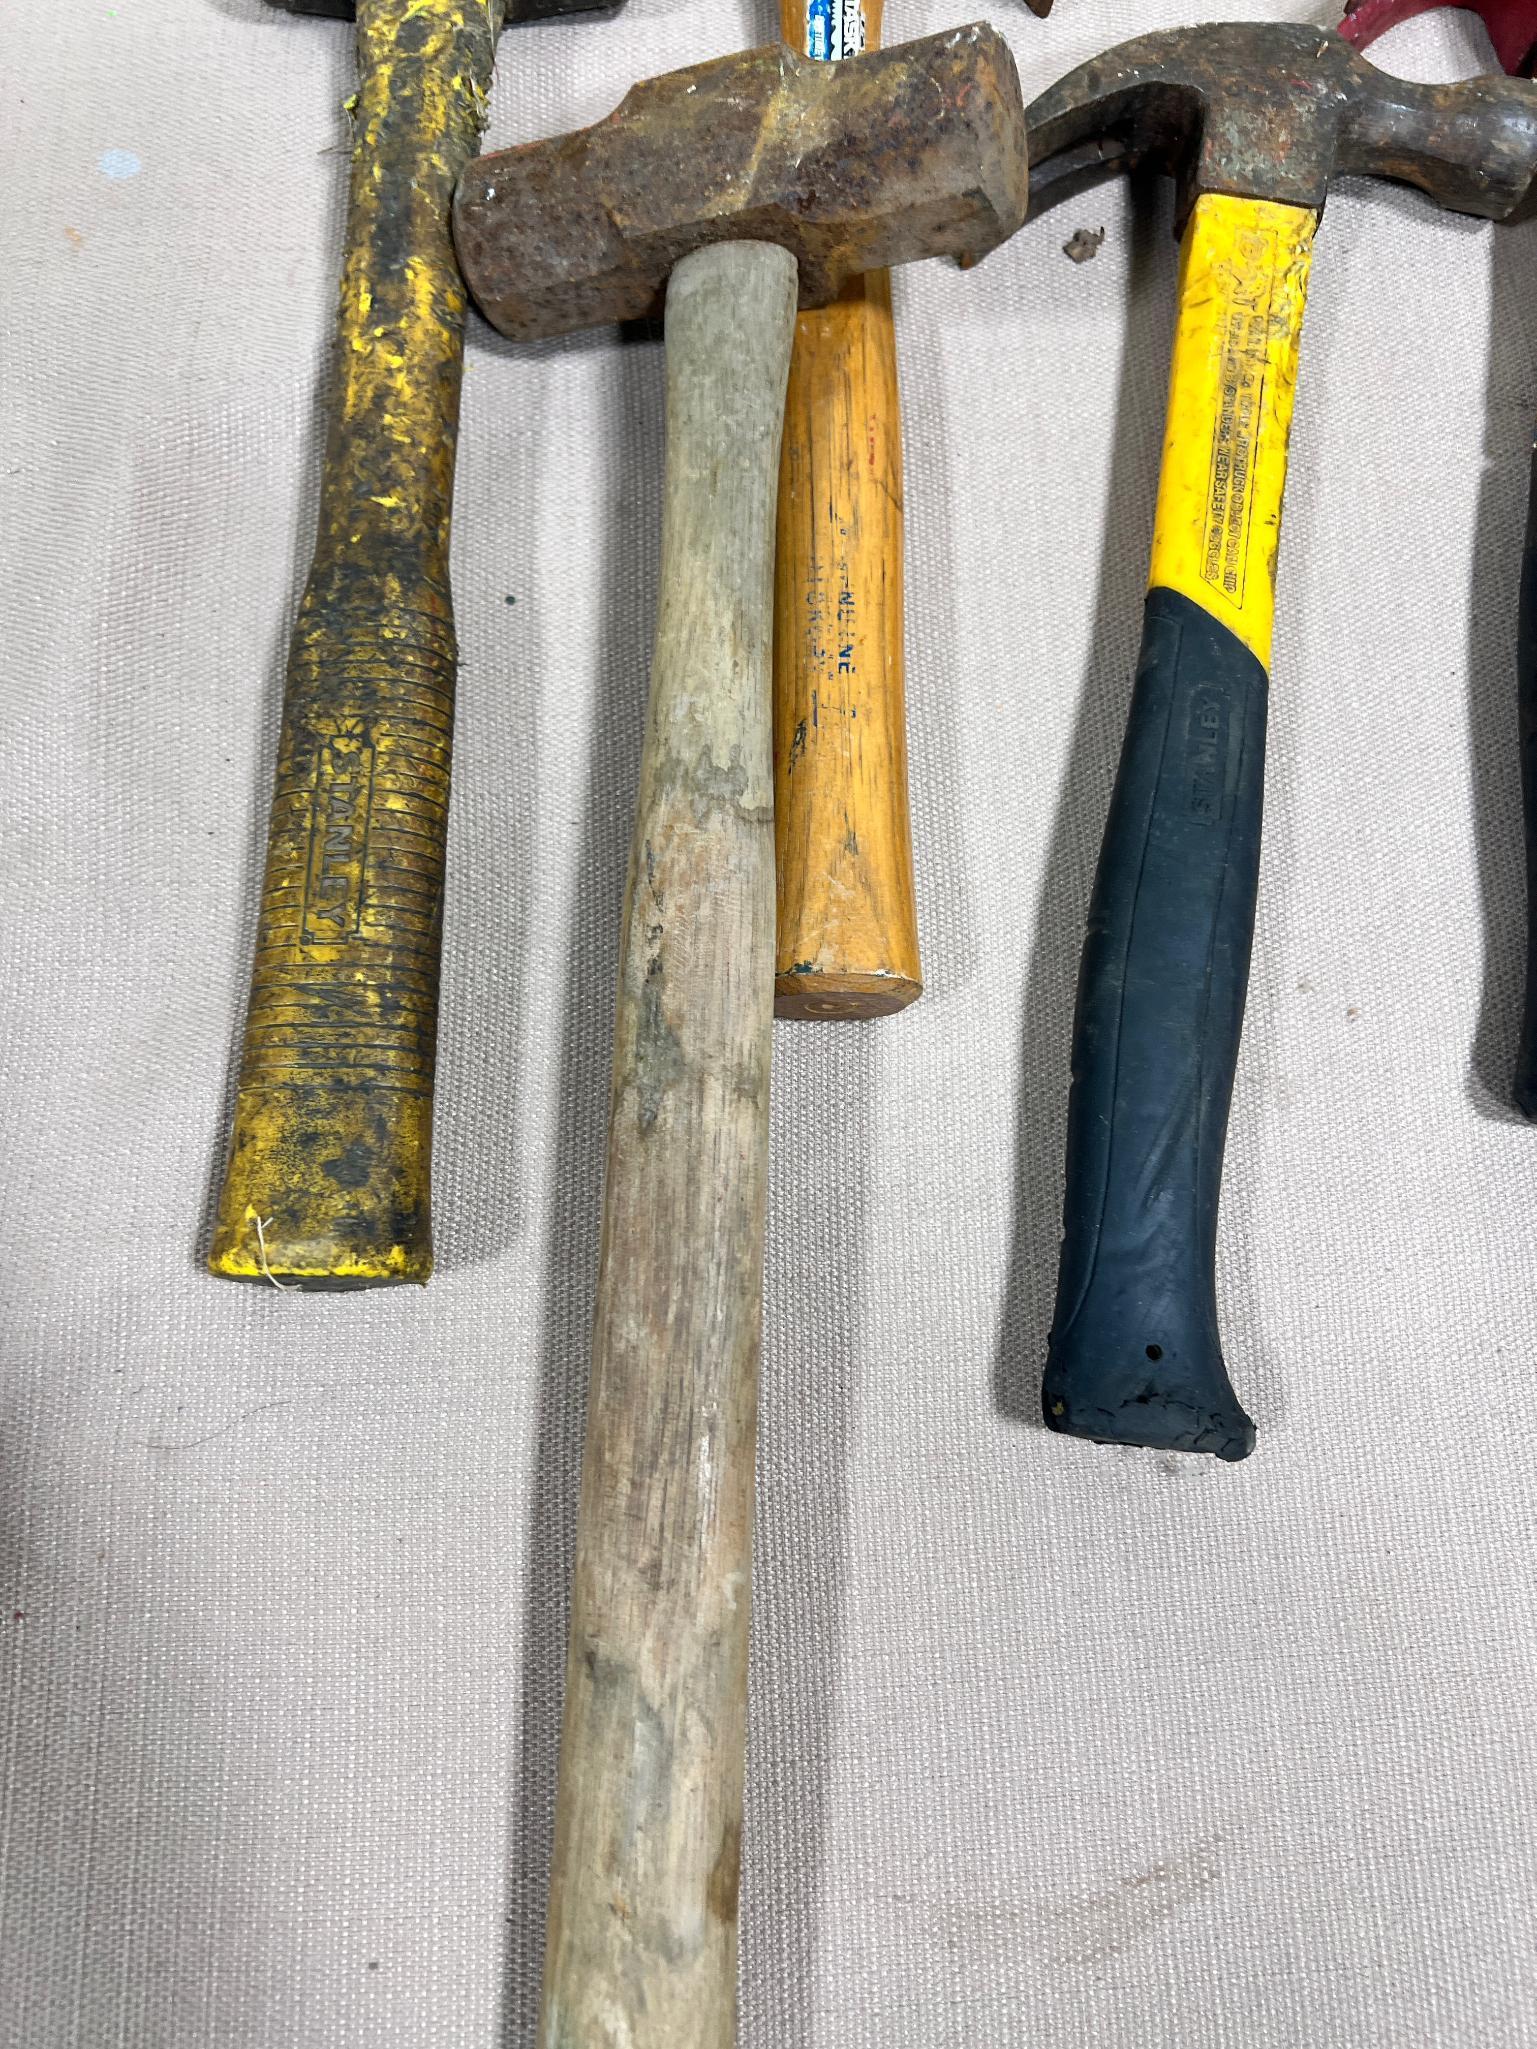 5- Asst. hammers